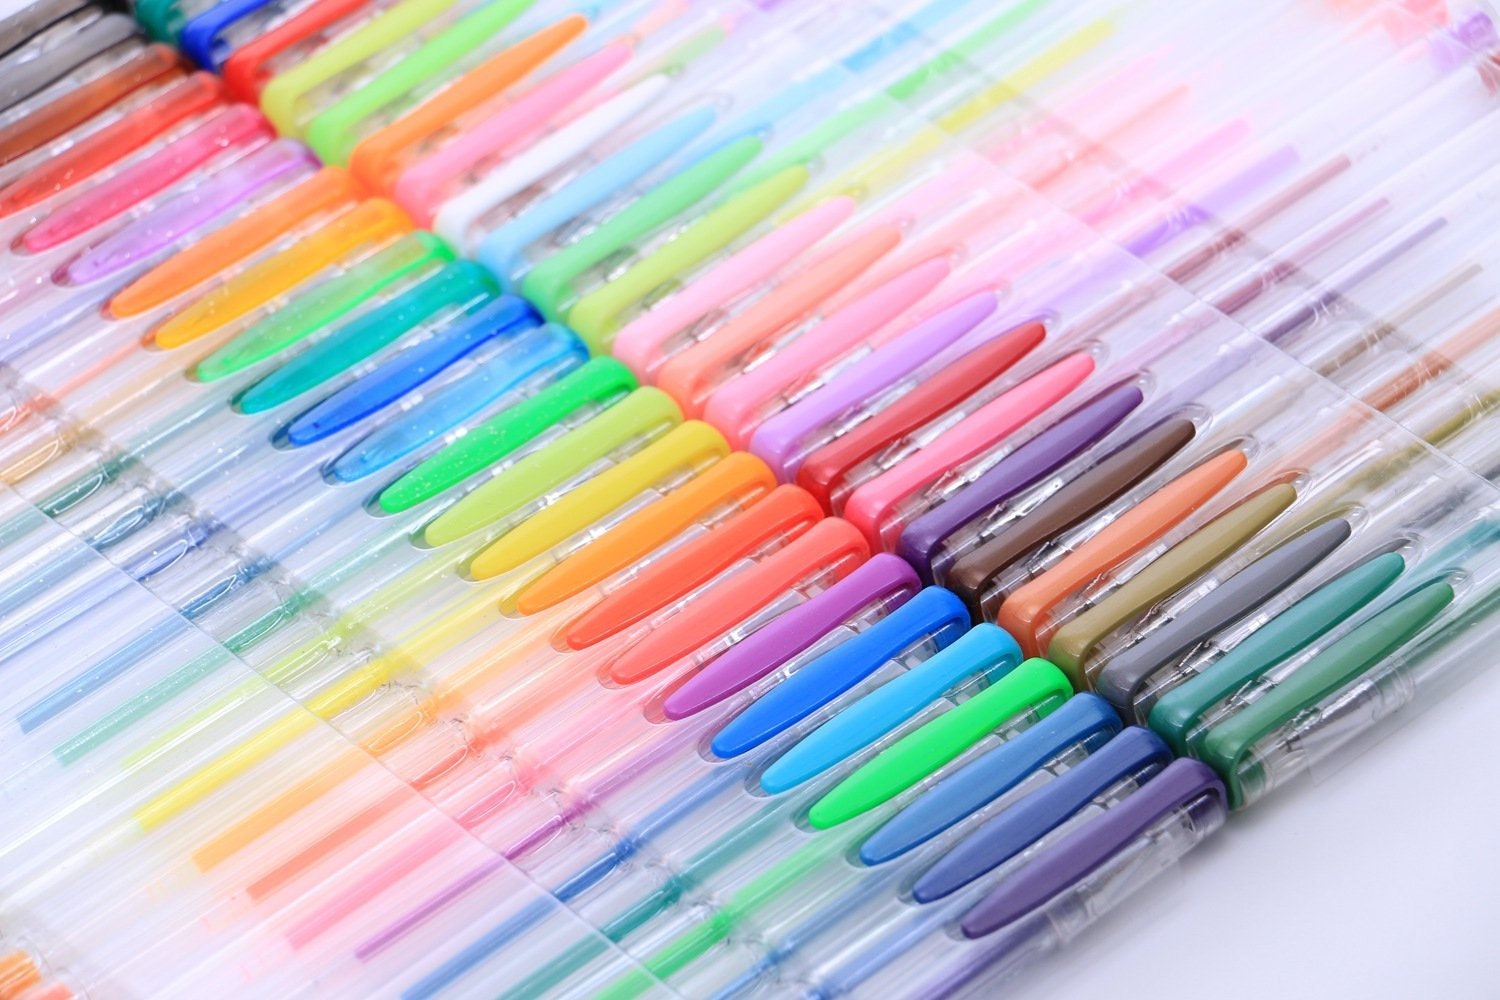 Shuttle Art 120 Unique Colors (No Duplicates) Gel Pens Gel Pen Set for Adult